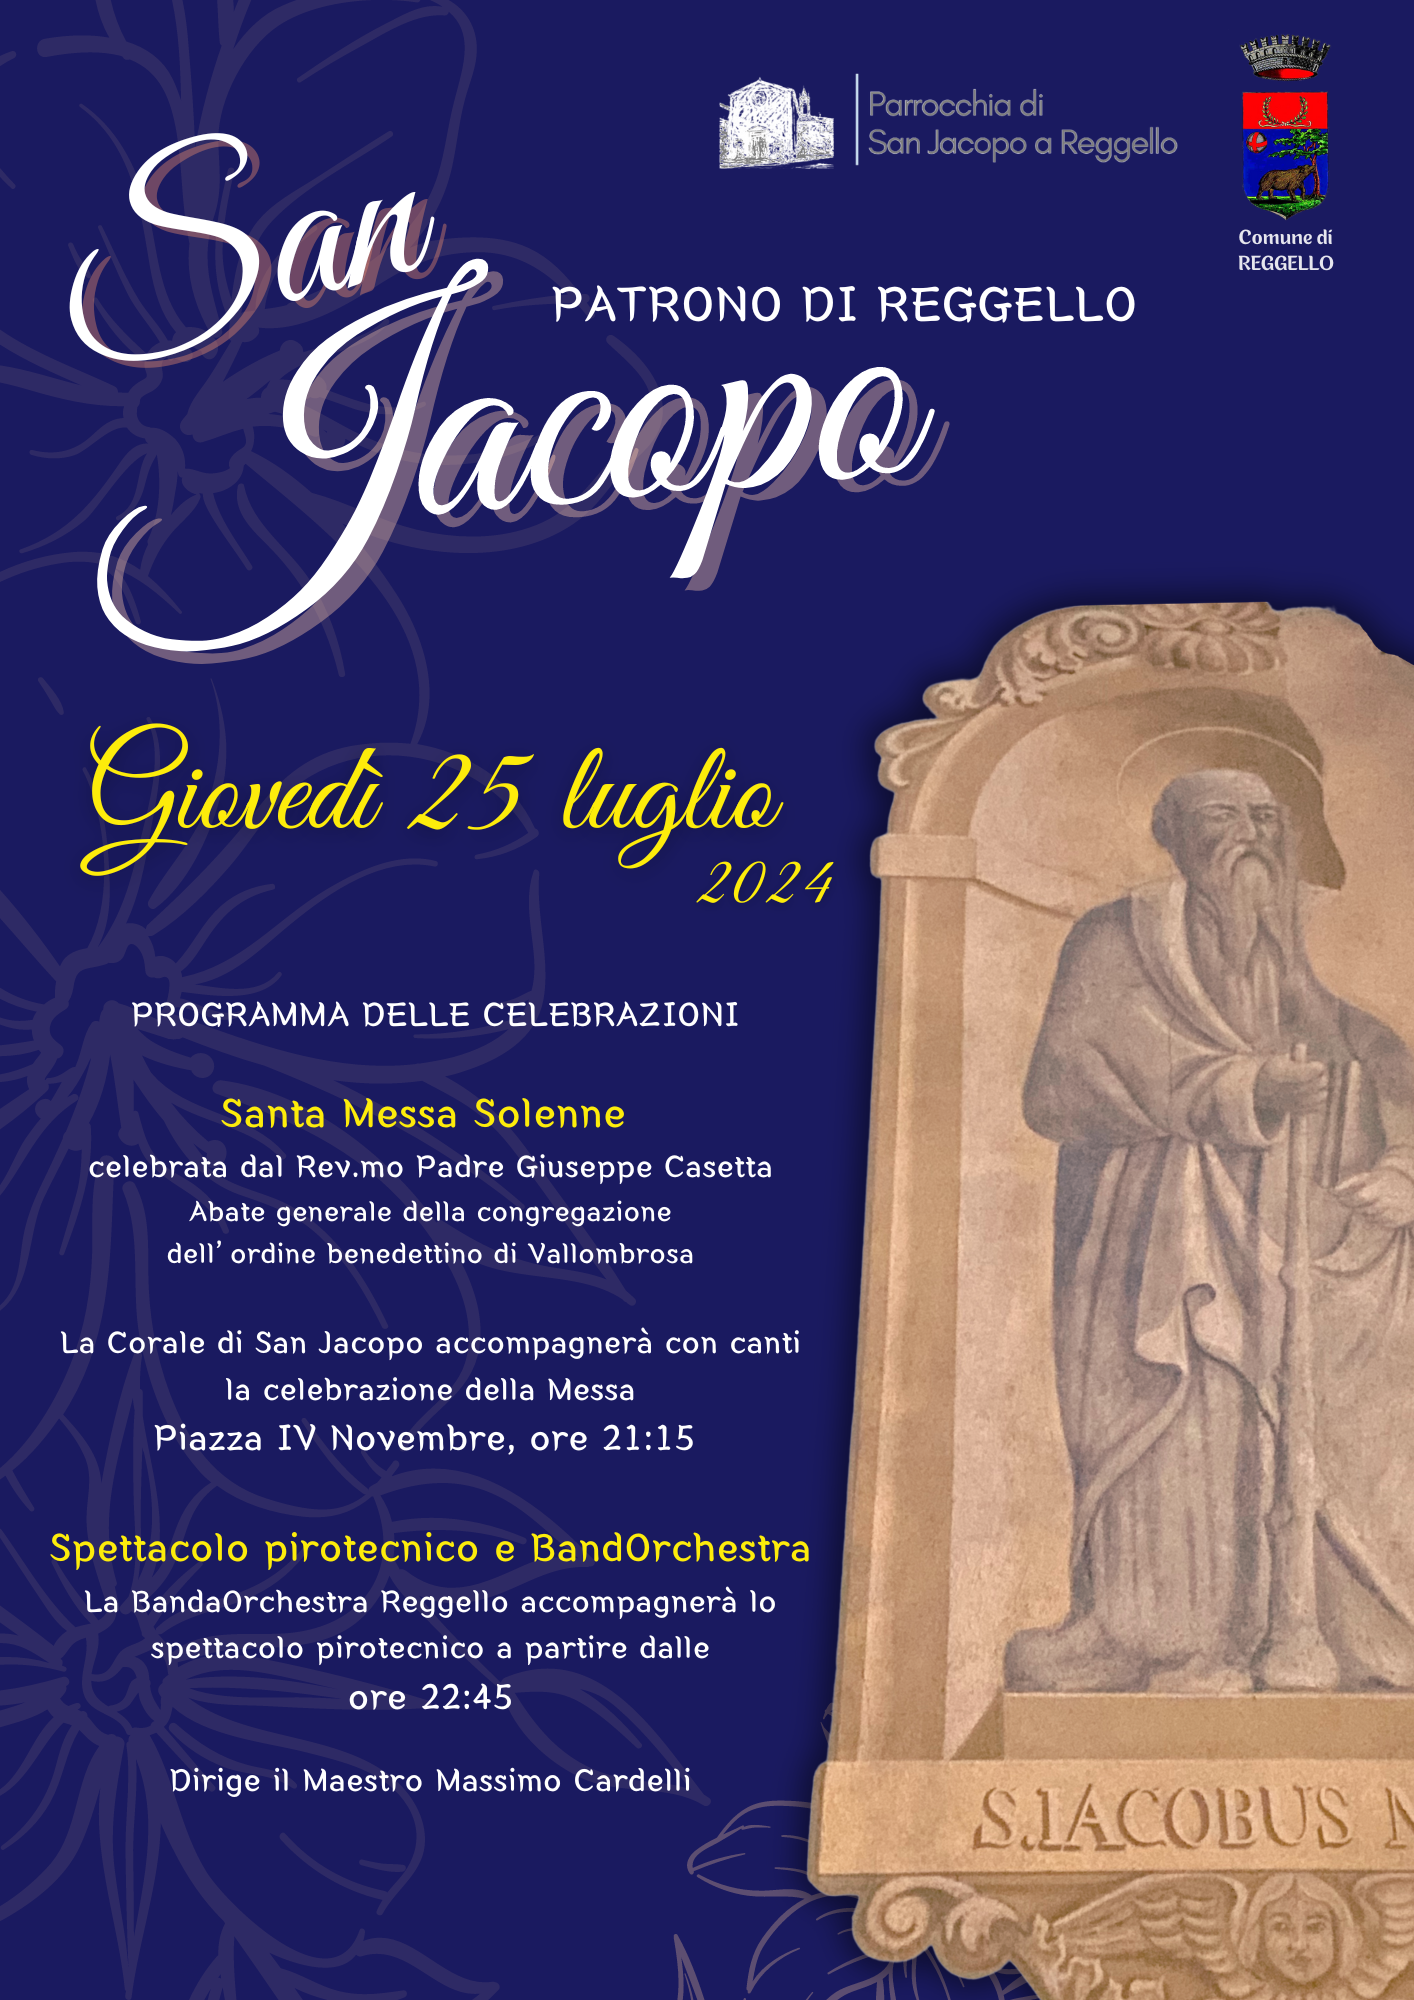 San Jacopo, 25 luglio, celebrazioni del Patrono a Reggello